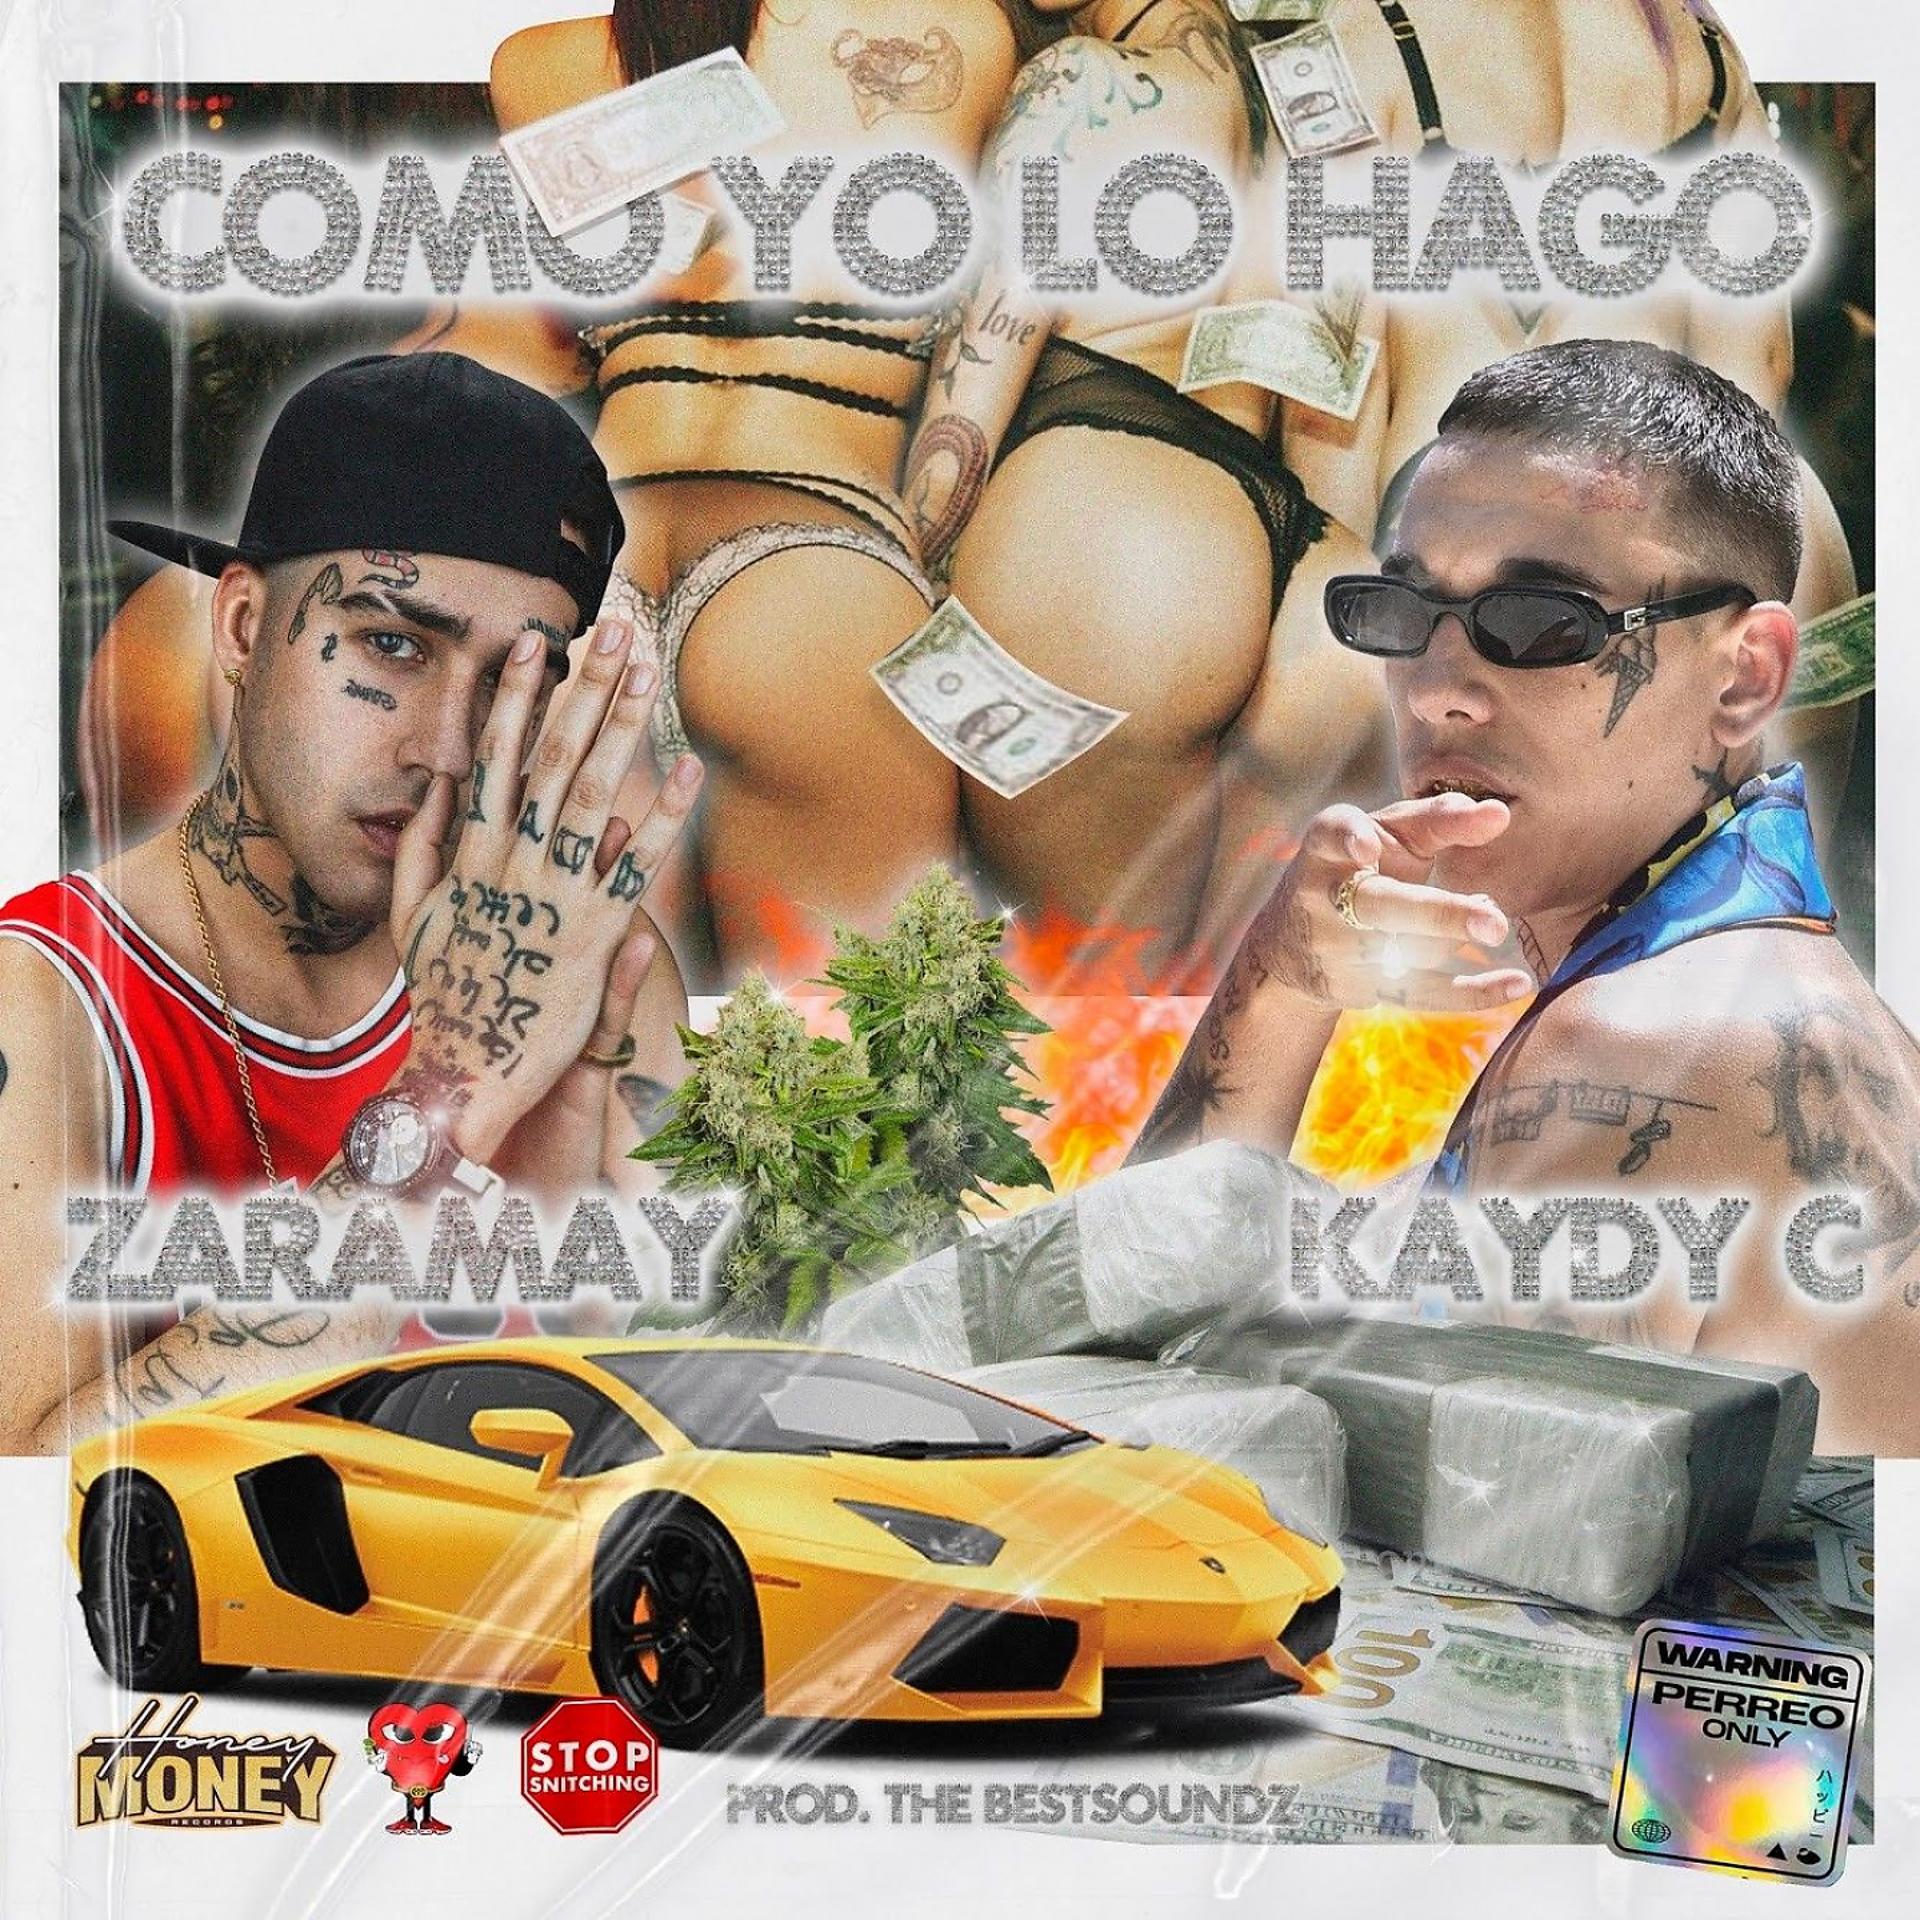 Постер альбома Como Yo Lo Hago